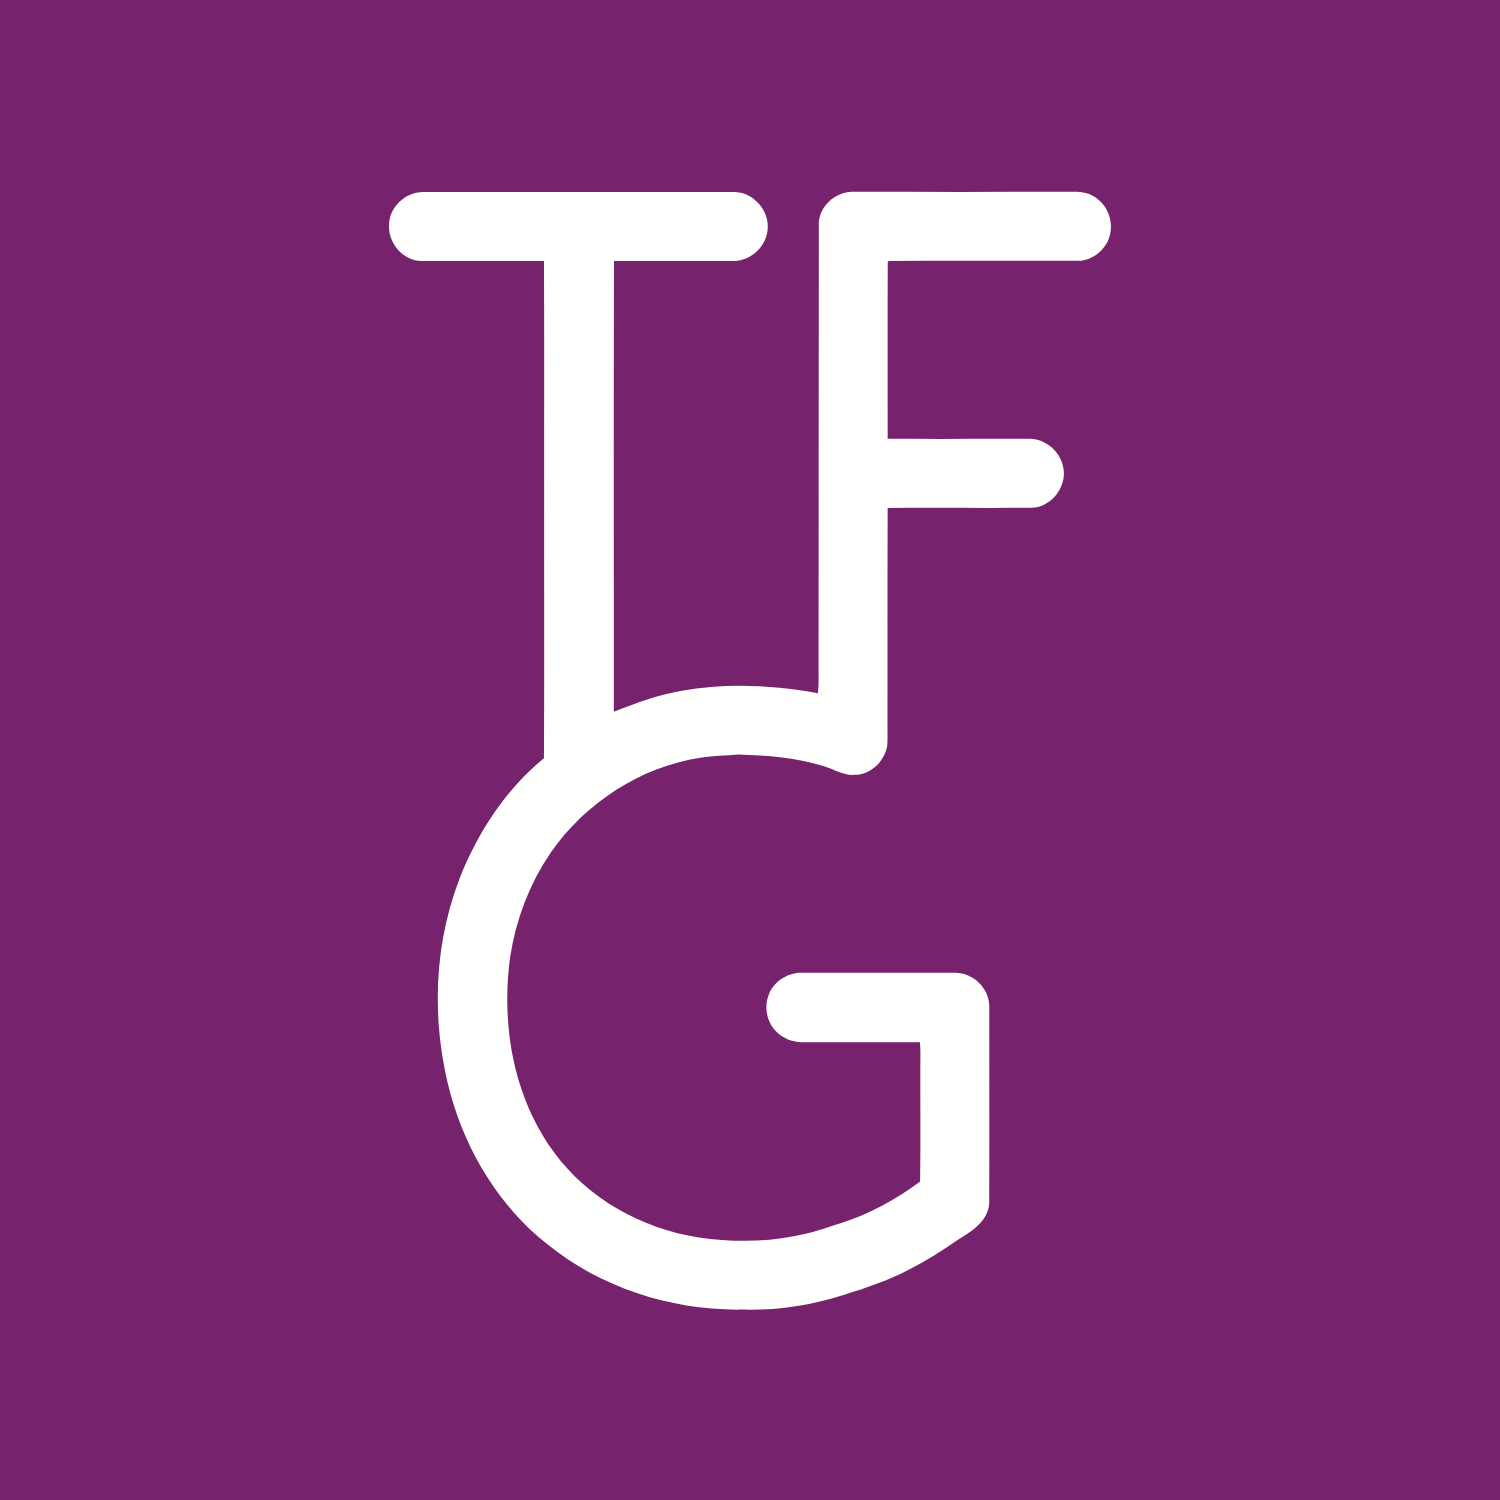 The Foschini Group logo (transparent PNG)